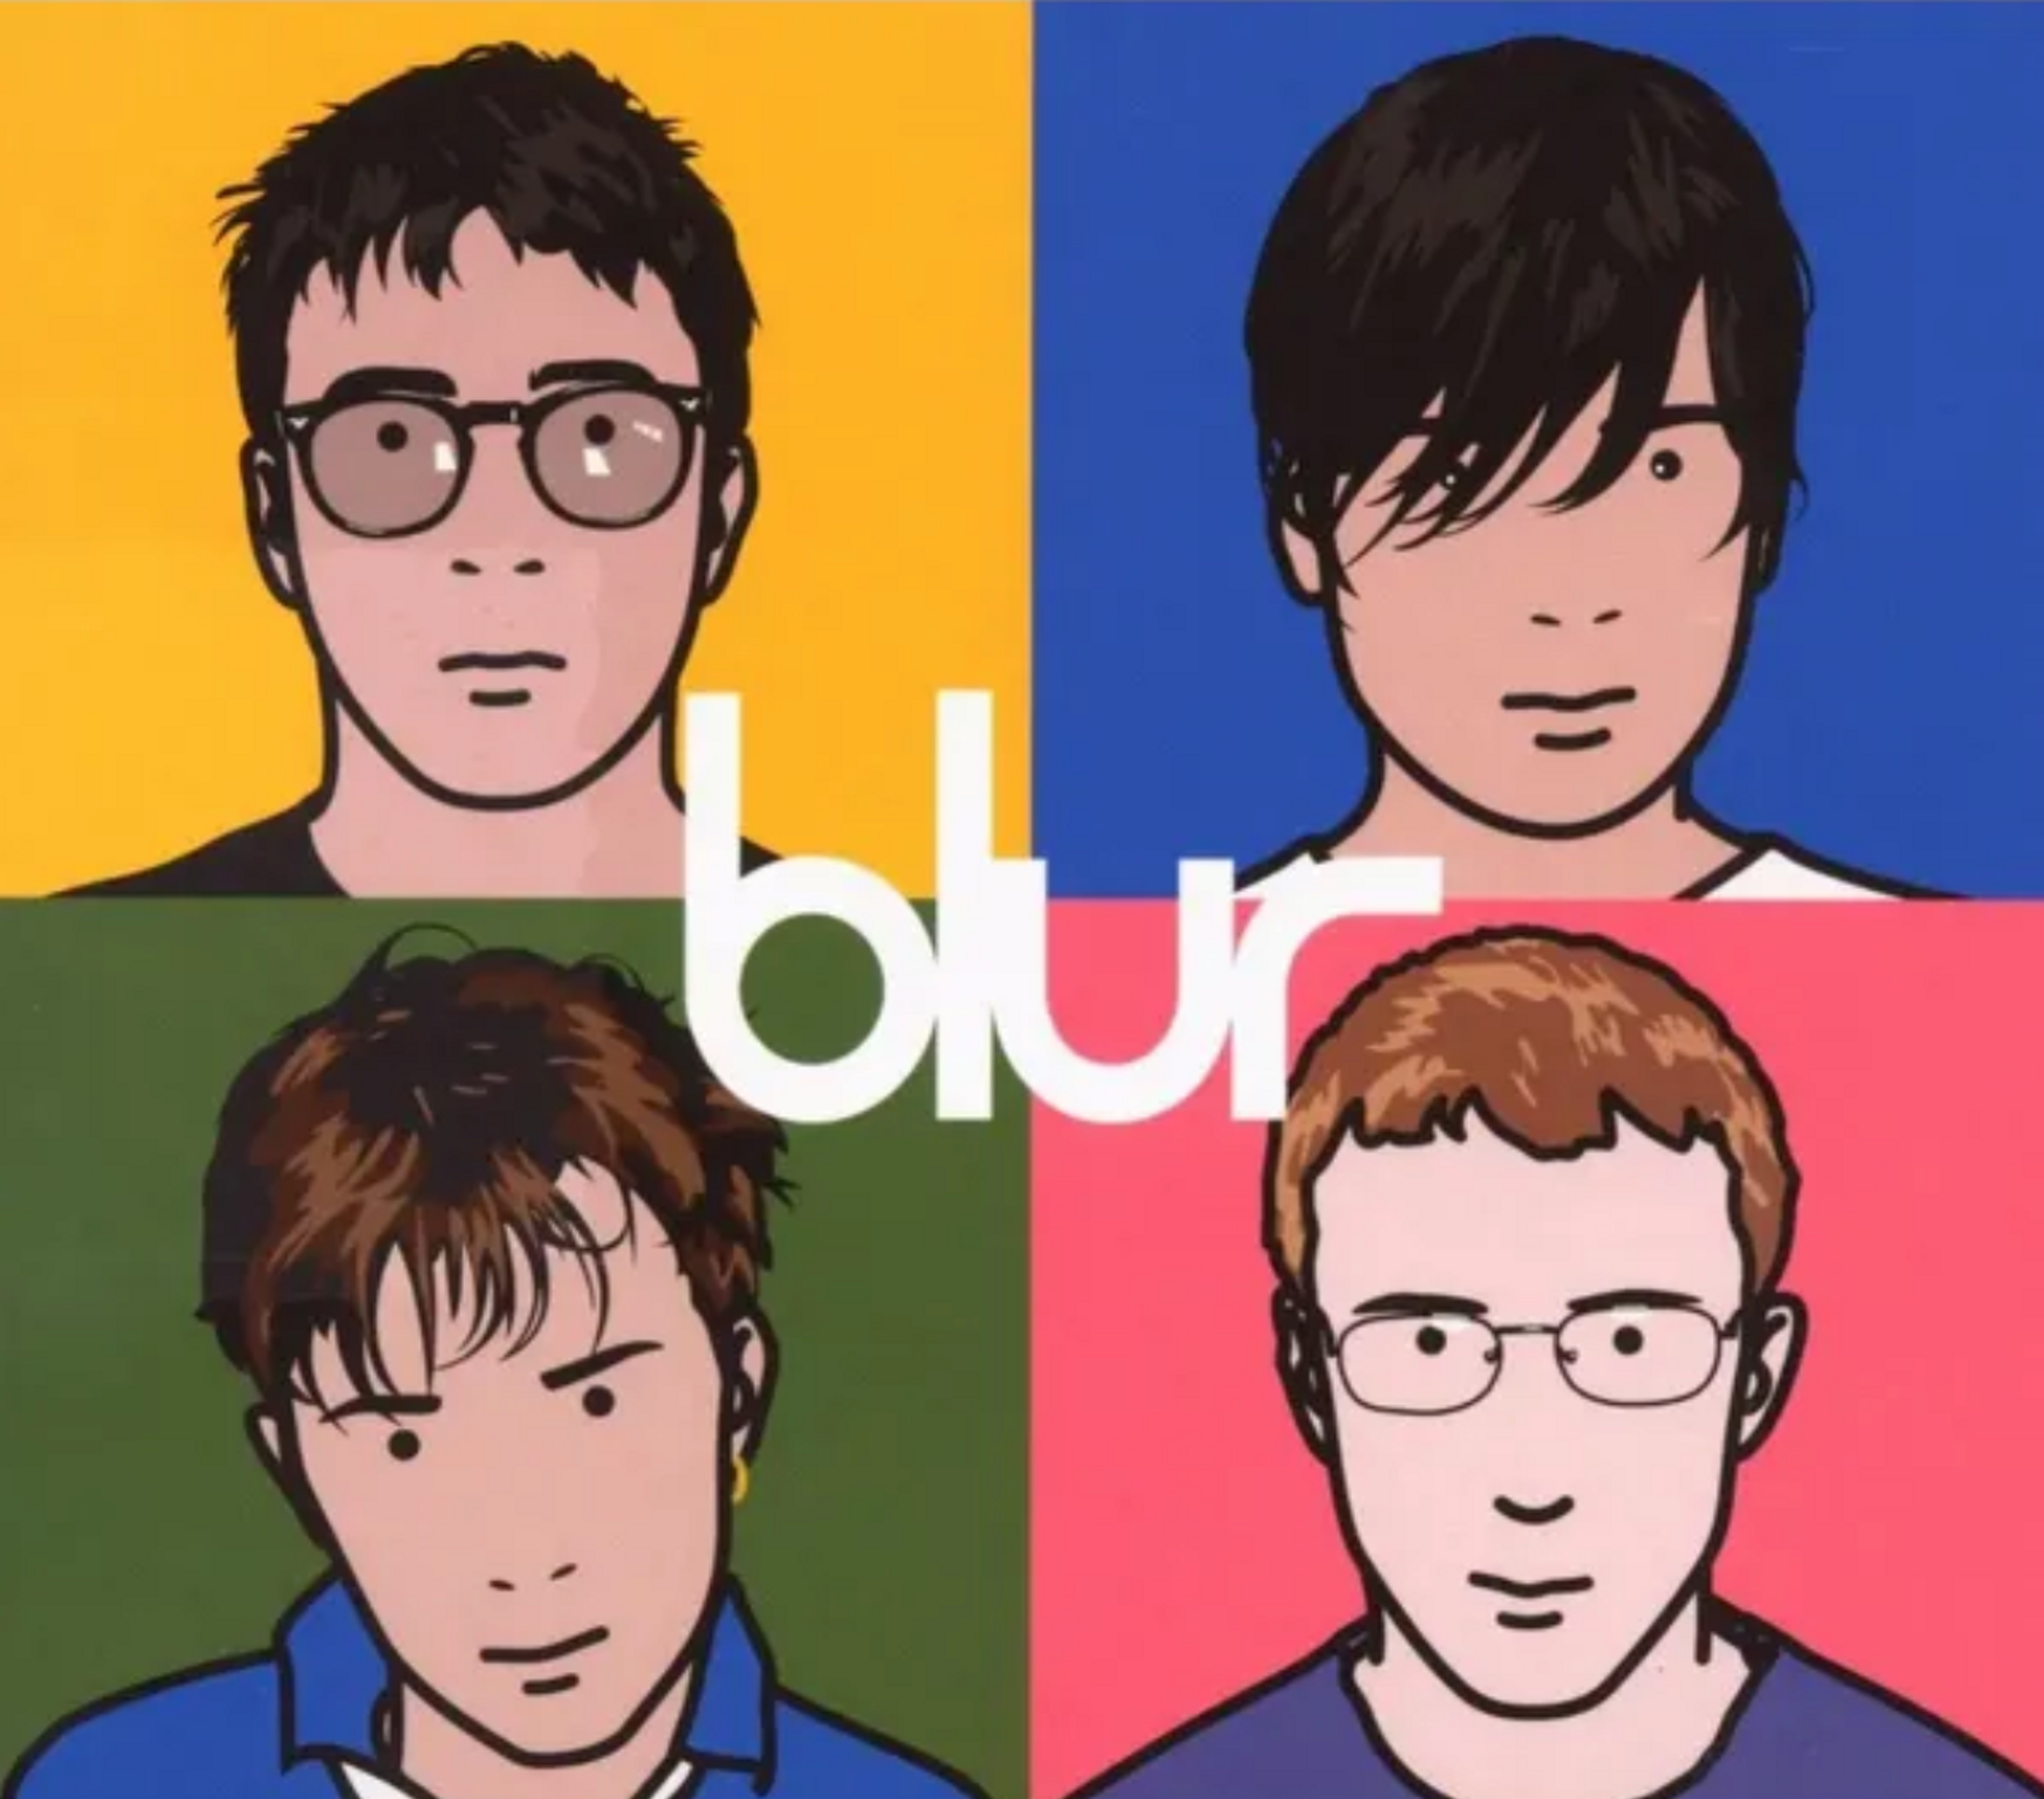 Best of Blur by Blur